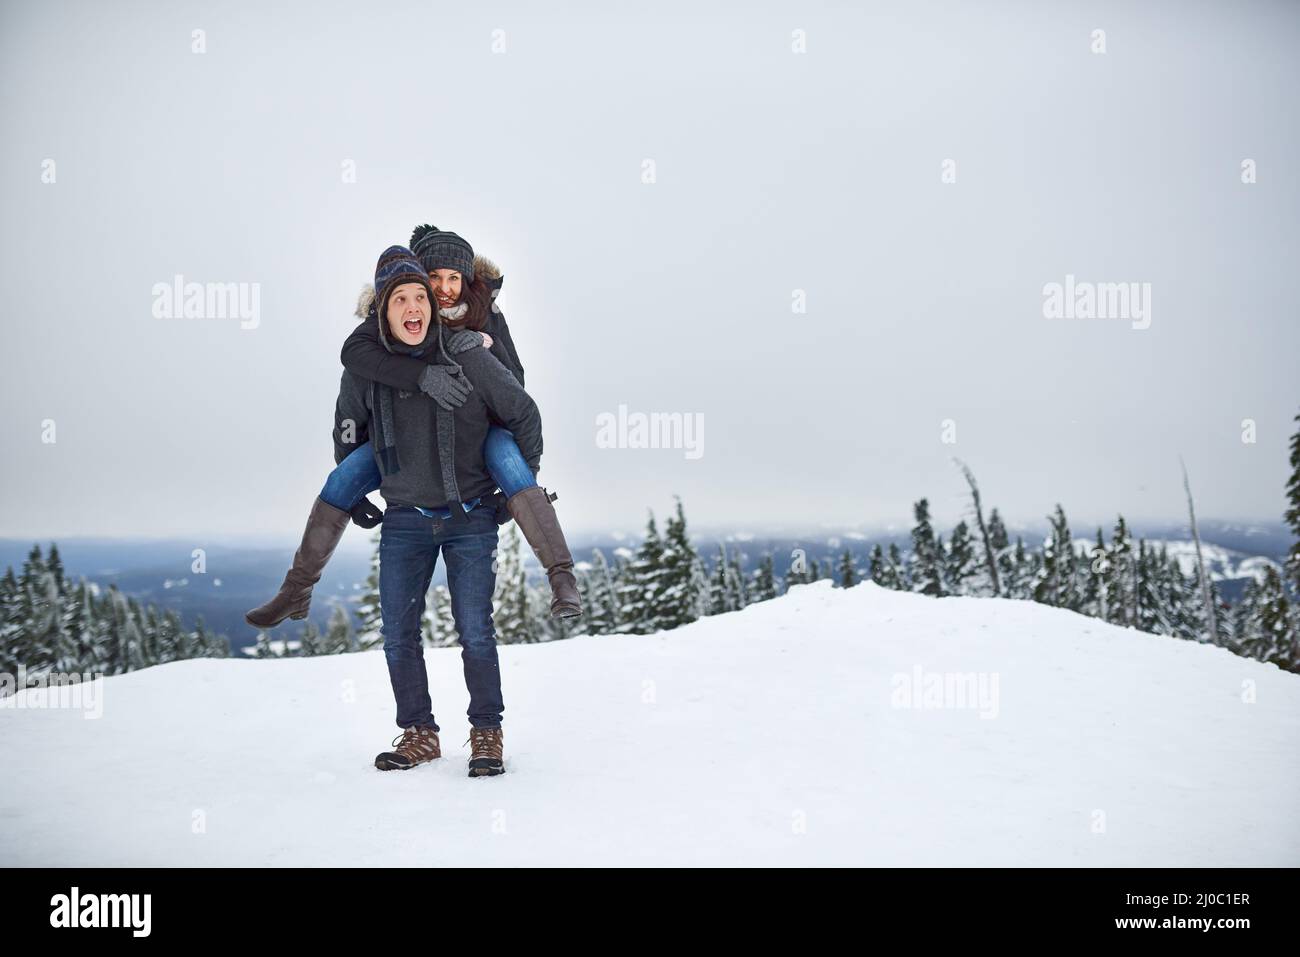 Ils étaient à la hauteur de la neige. Photo d'un jeune couple heureux s'appréciant tout en étant dehors dans la neige. Banque D'Images